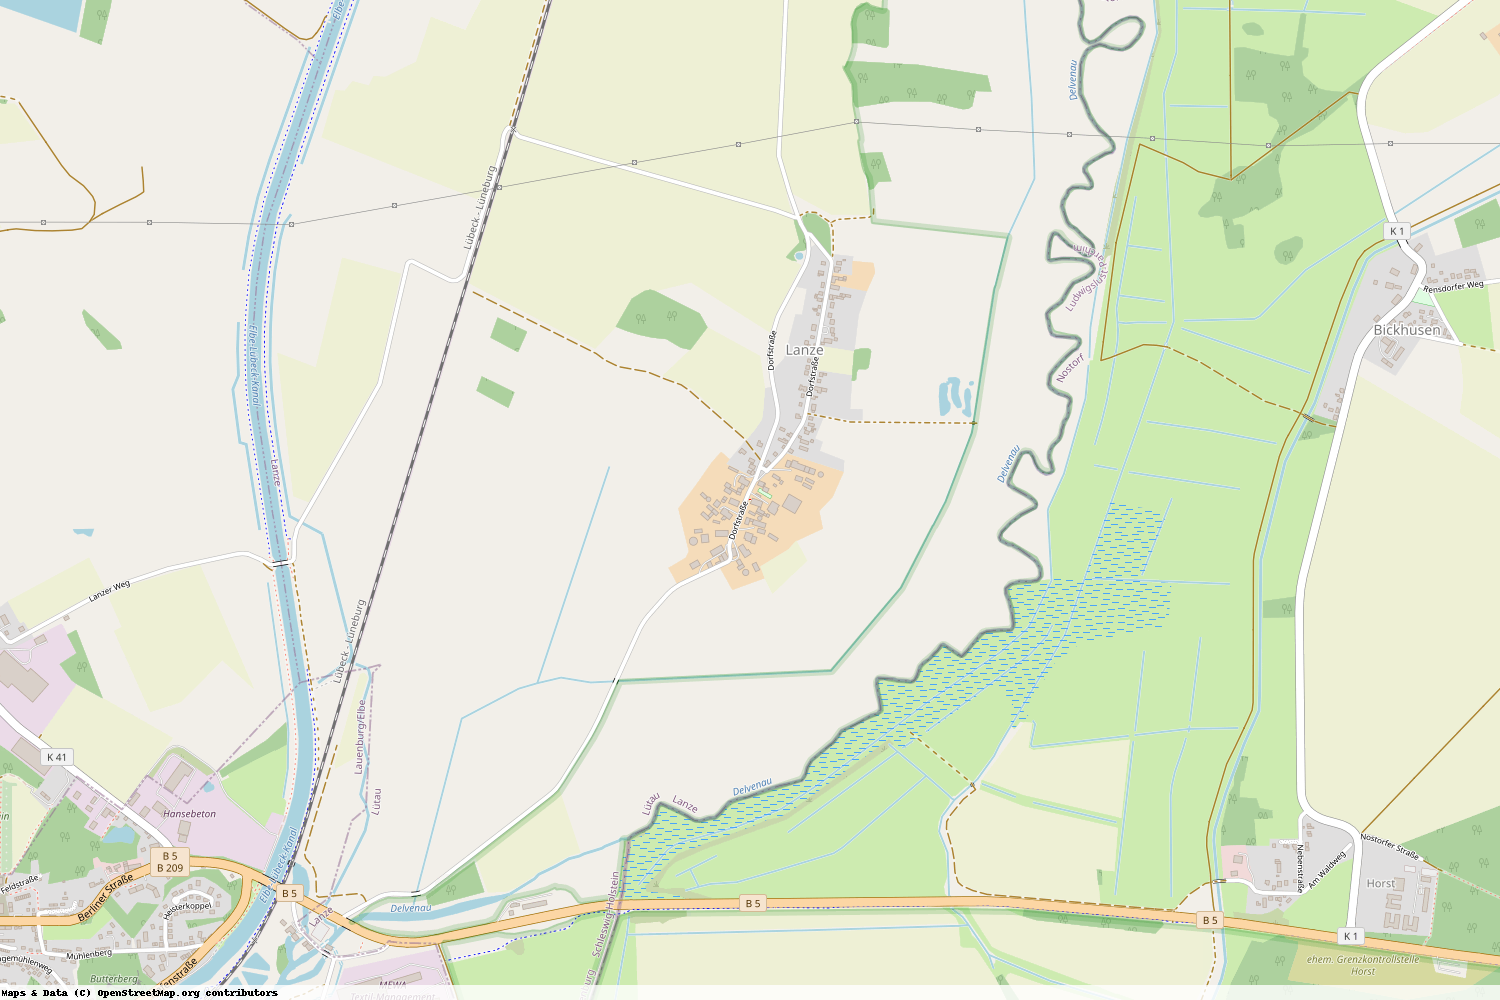 Ist gerade Stromausfall in Schleswig-Holstein - Herzogtum Lauenburg - Lanze?